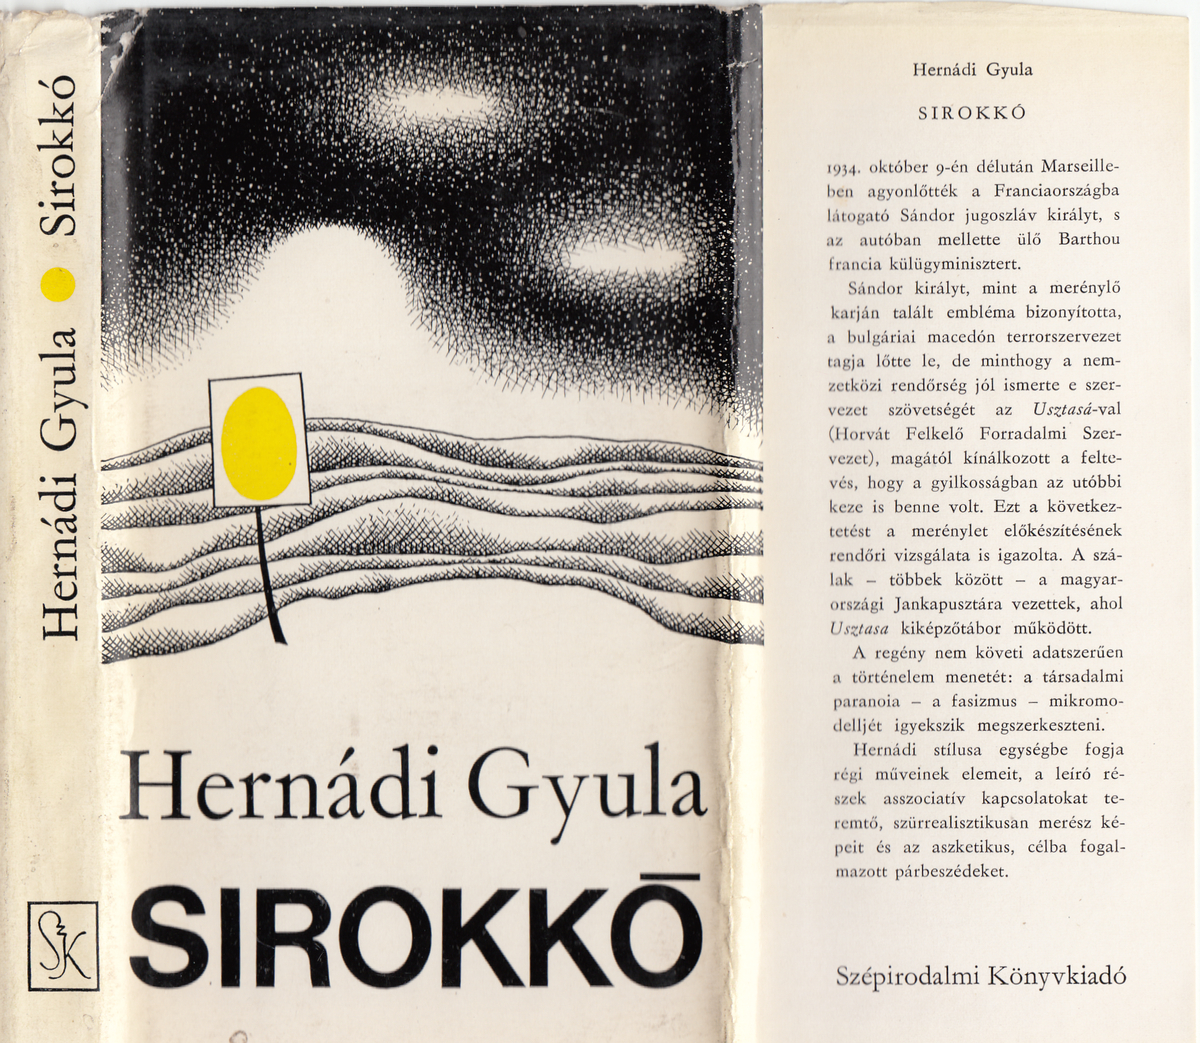 Hernádi Gyula: Sirokkó, regény, Hernádi Gyula | Library OPAC